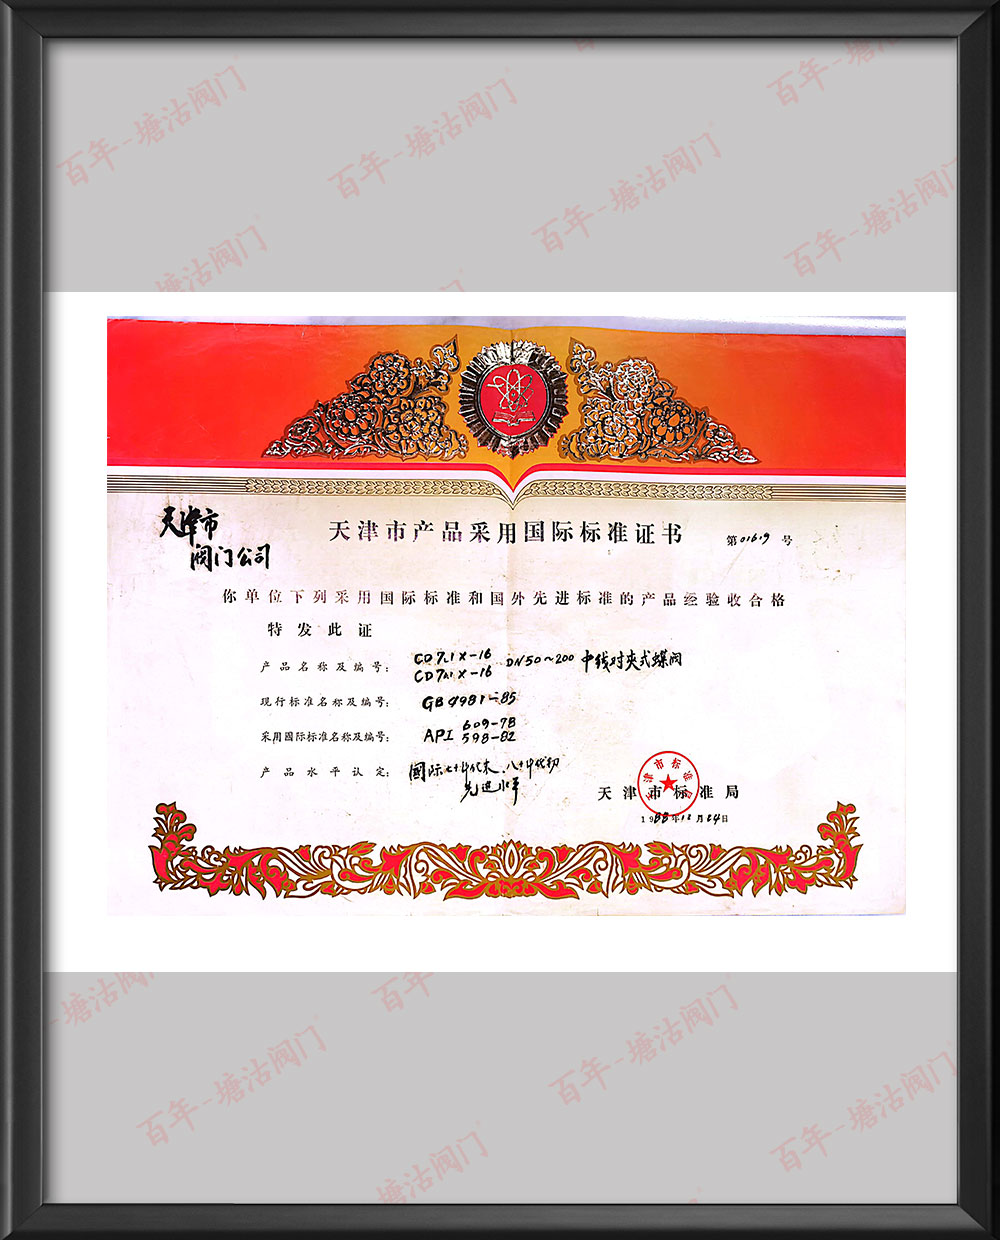 1988年中線對夾式蝶閥天津市產品采用國標標準證書